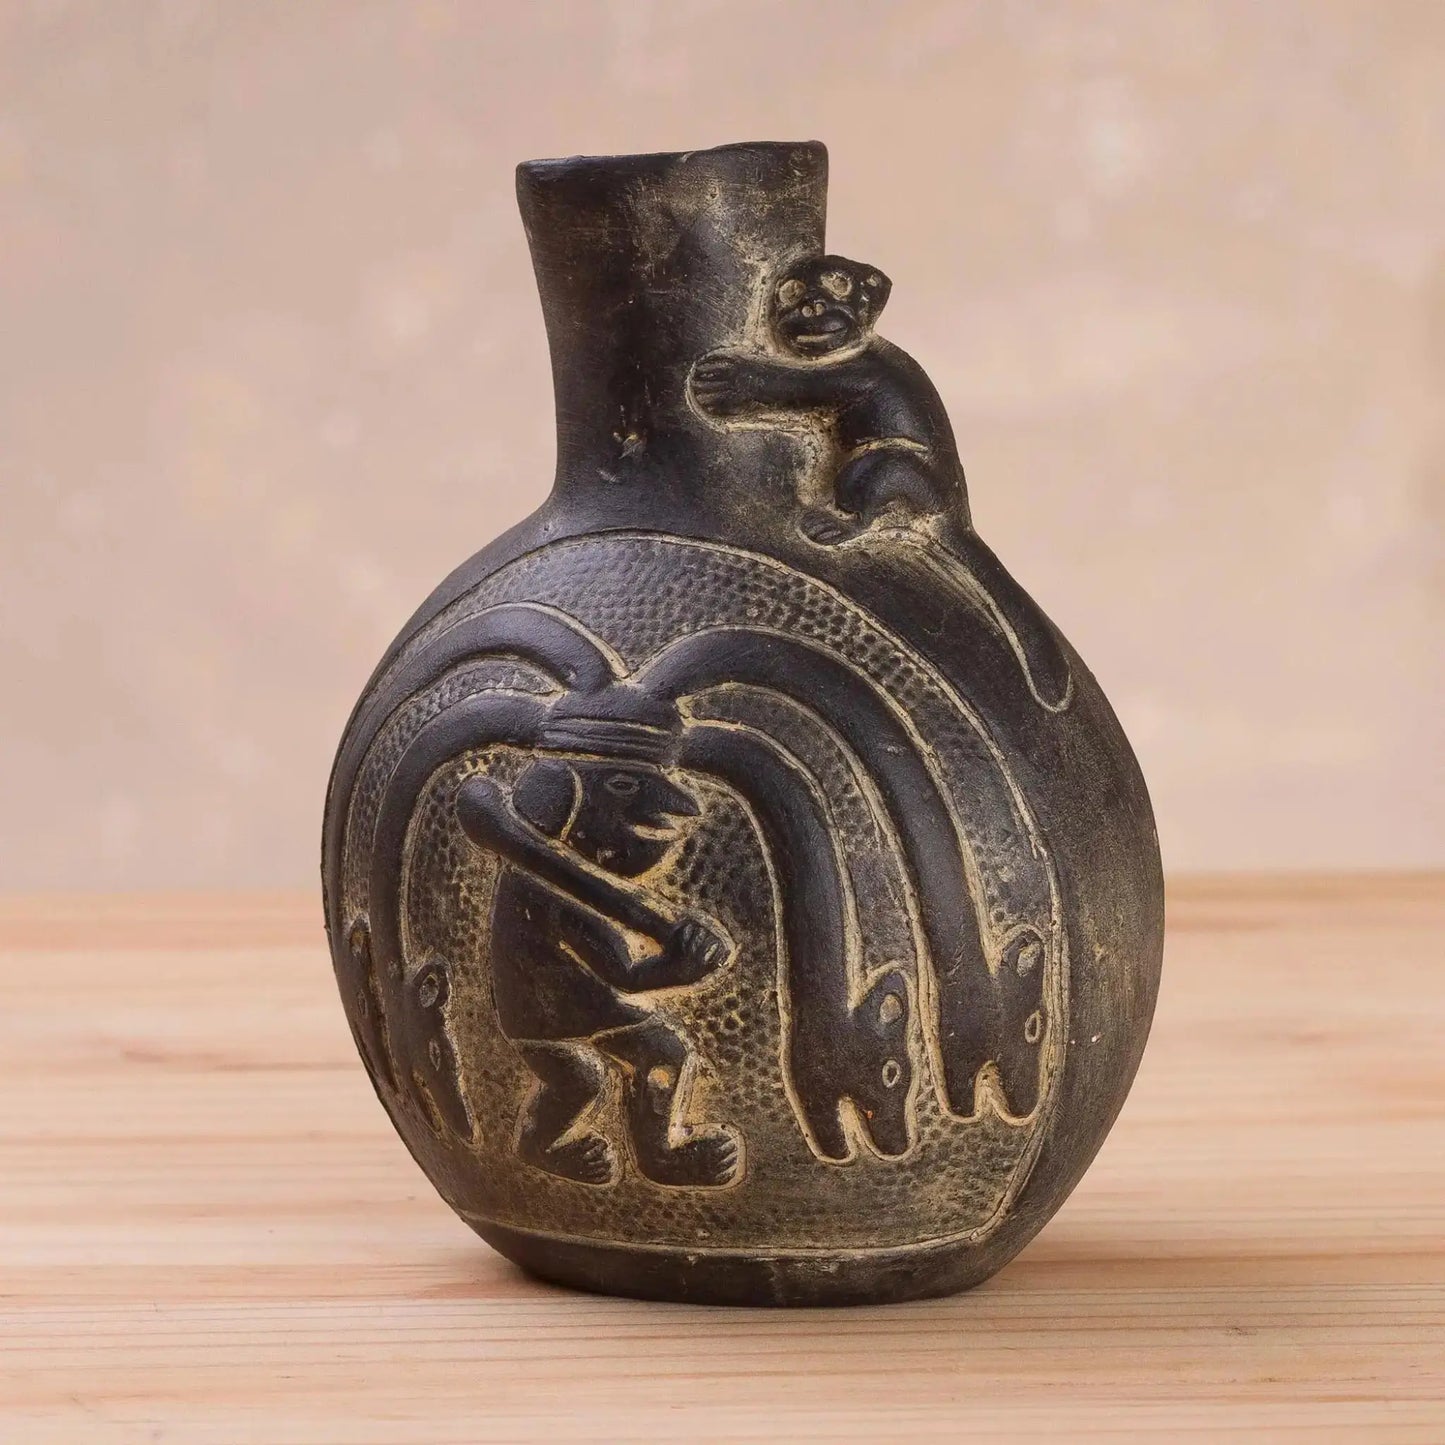 Chimu Divinity - Ceramic Decorative Vase from Peru - Art